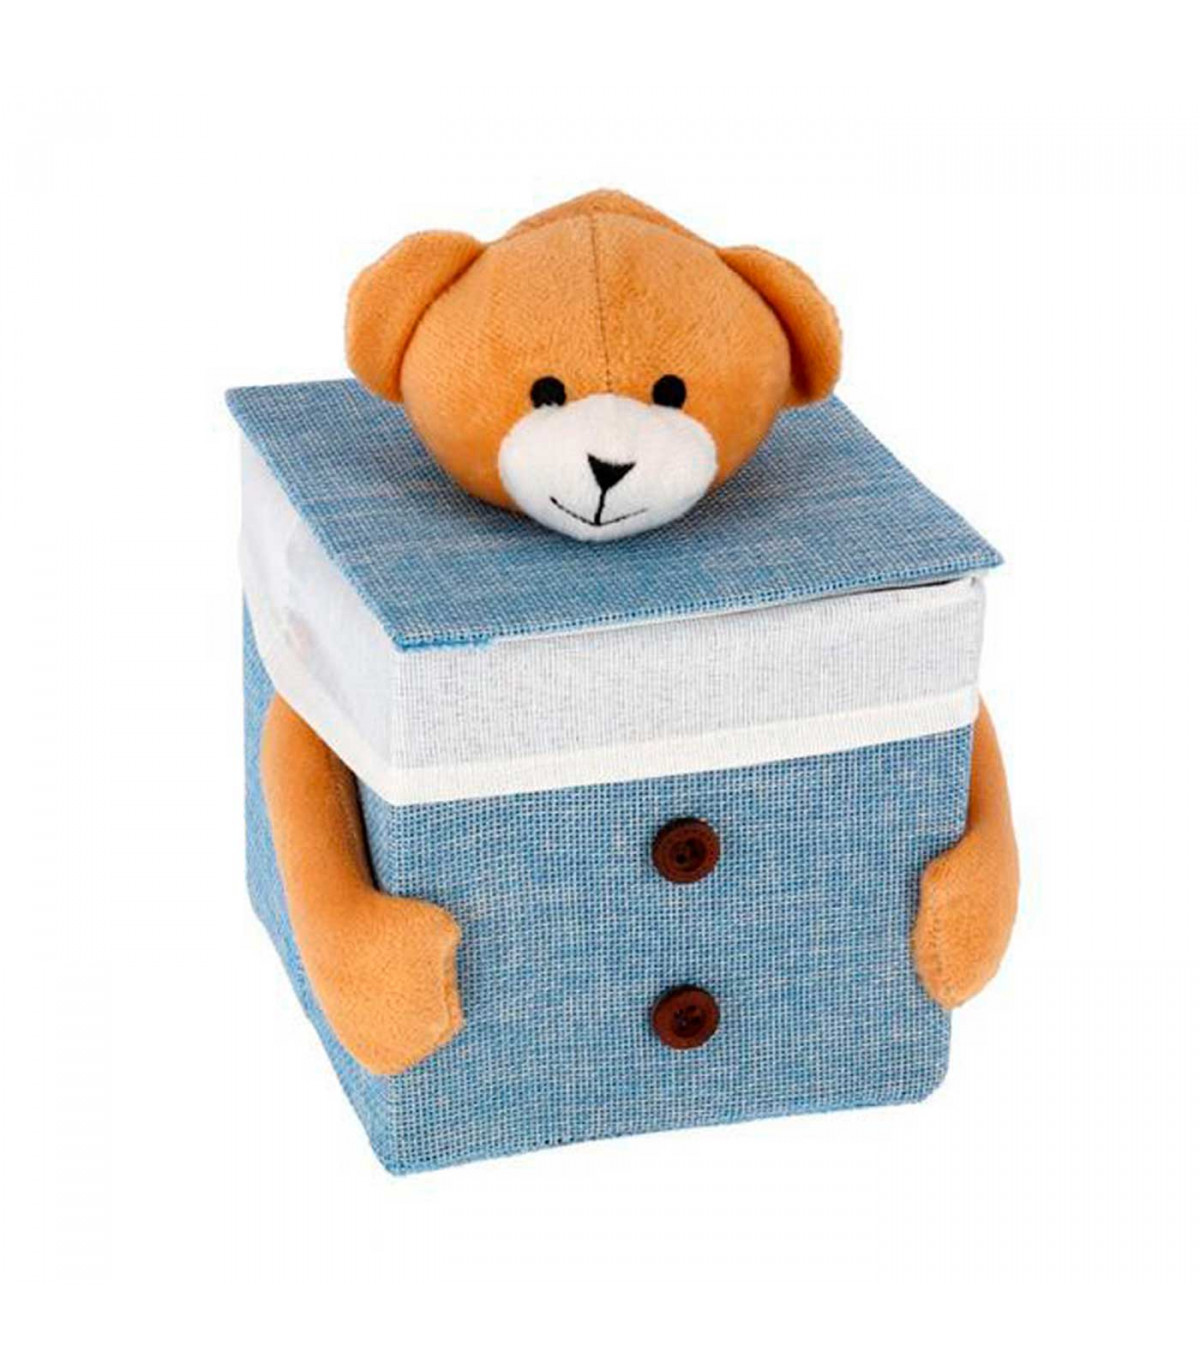 Caja con tapa - Caja de poliester recubierta de tela, Caja para la  decoración o almacenaje. 13 x 13 x 13 cm, colores aleatorio